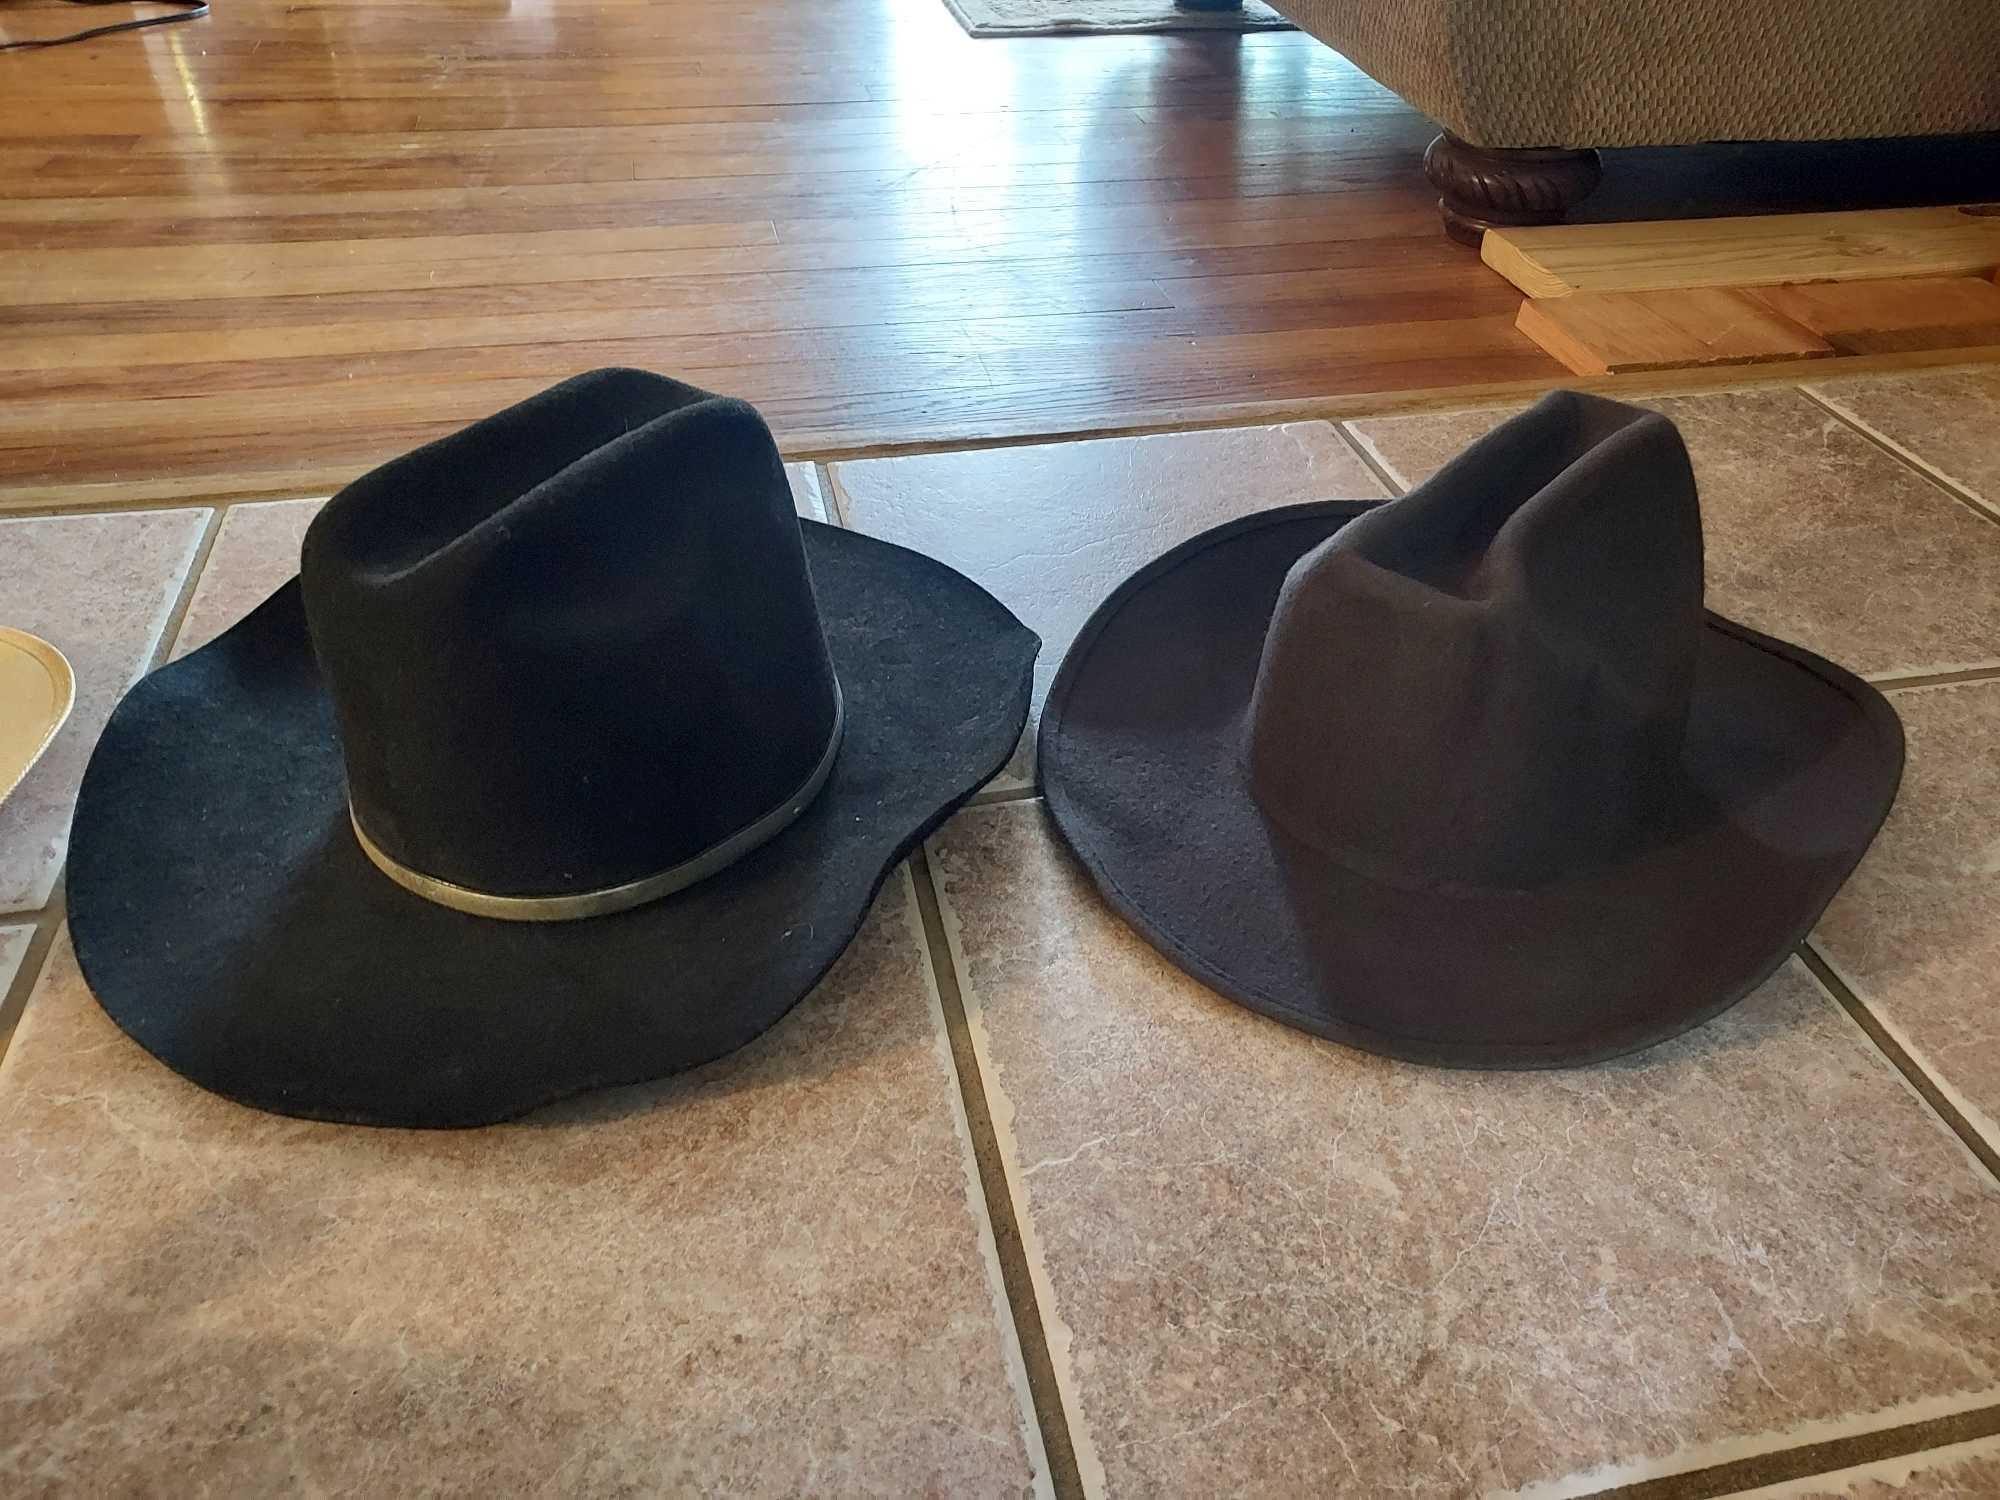 Assortment of Cowboy Hats